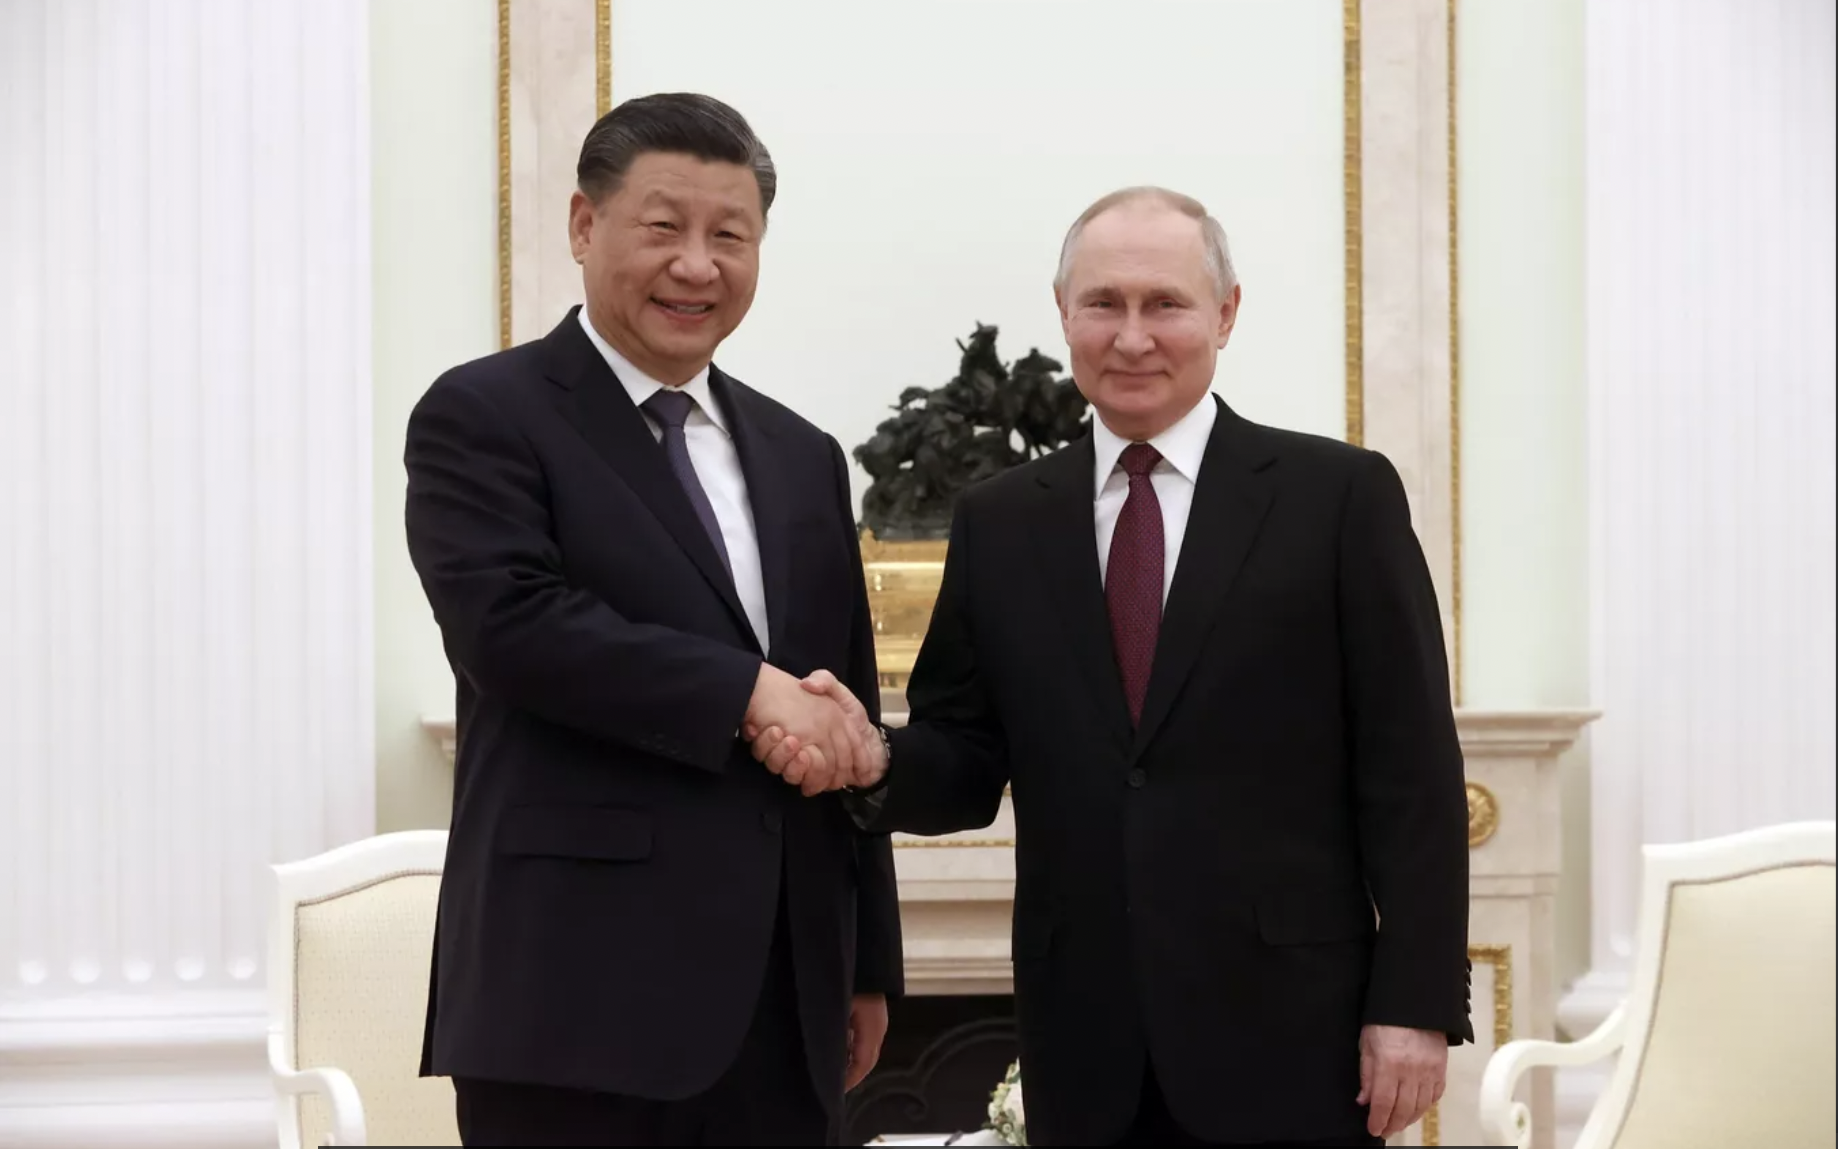 Tin tức thế giới 21-3: Lãnh đạo Nga - Trung nói chuyện cả buổi; Mỹ có luật giải mật nguồn gốc COVID